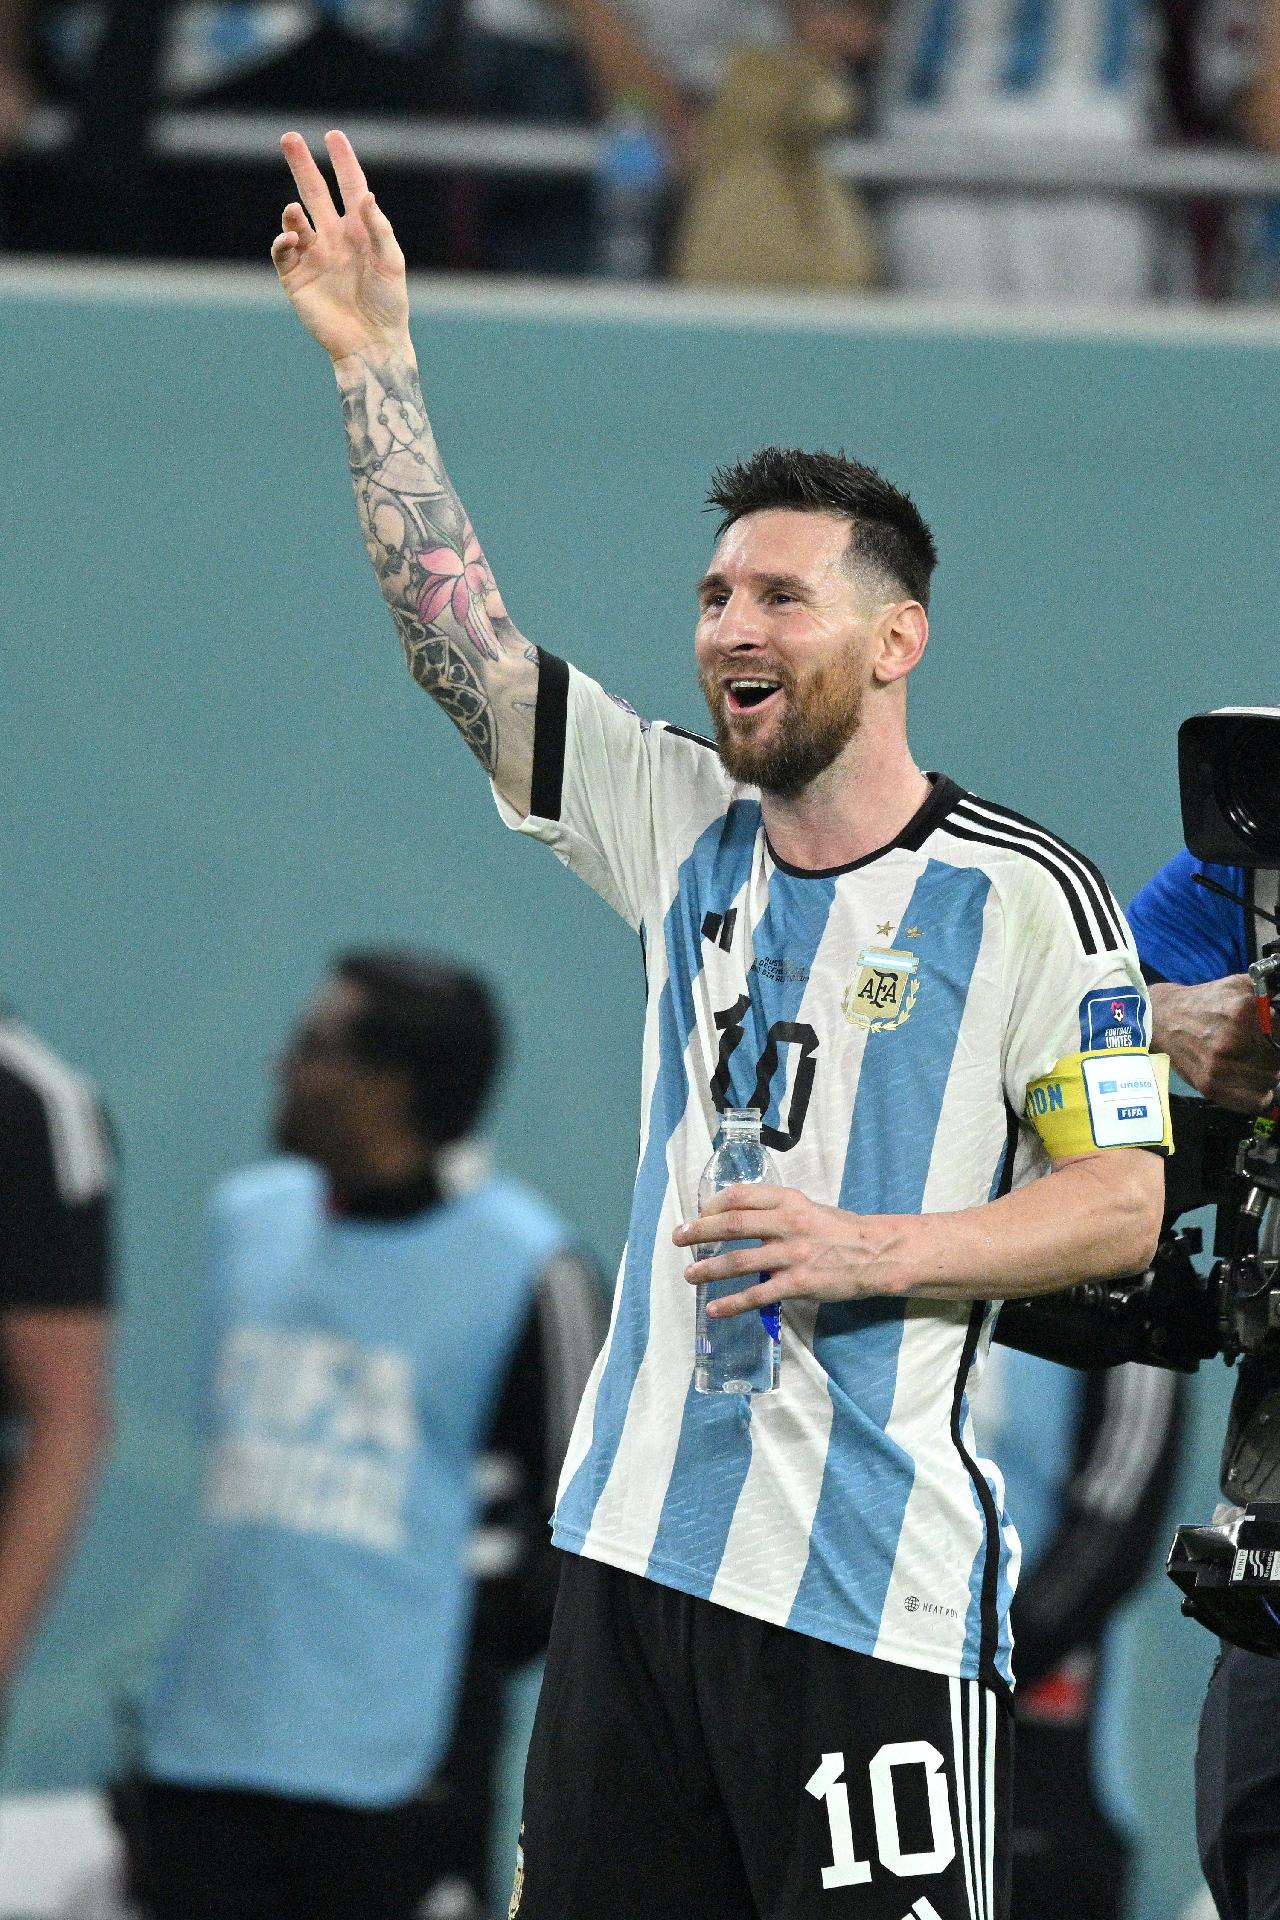 Ex-camisa 10 do Cruzeiro volta à Série B e é anunciado como 'Messi